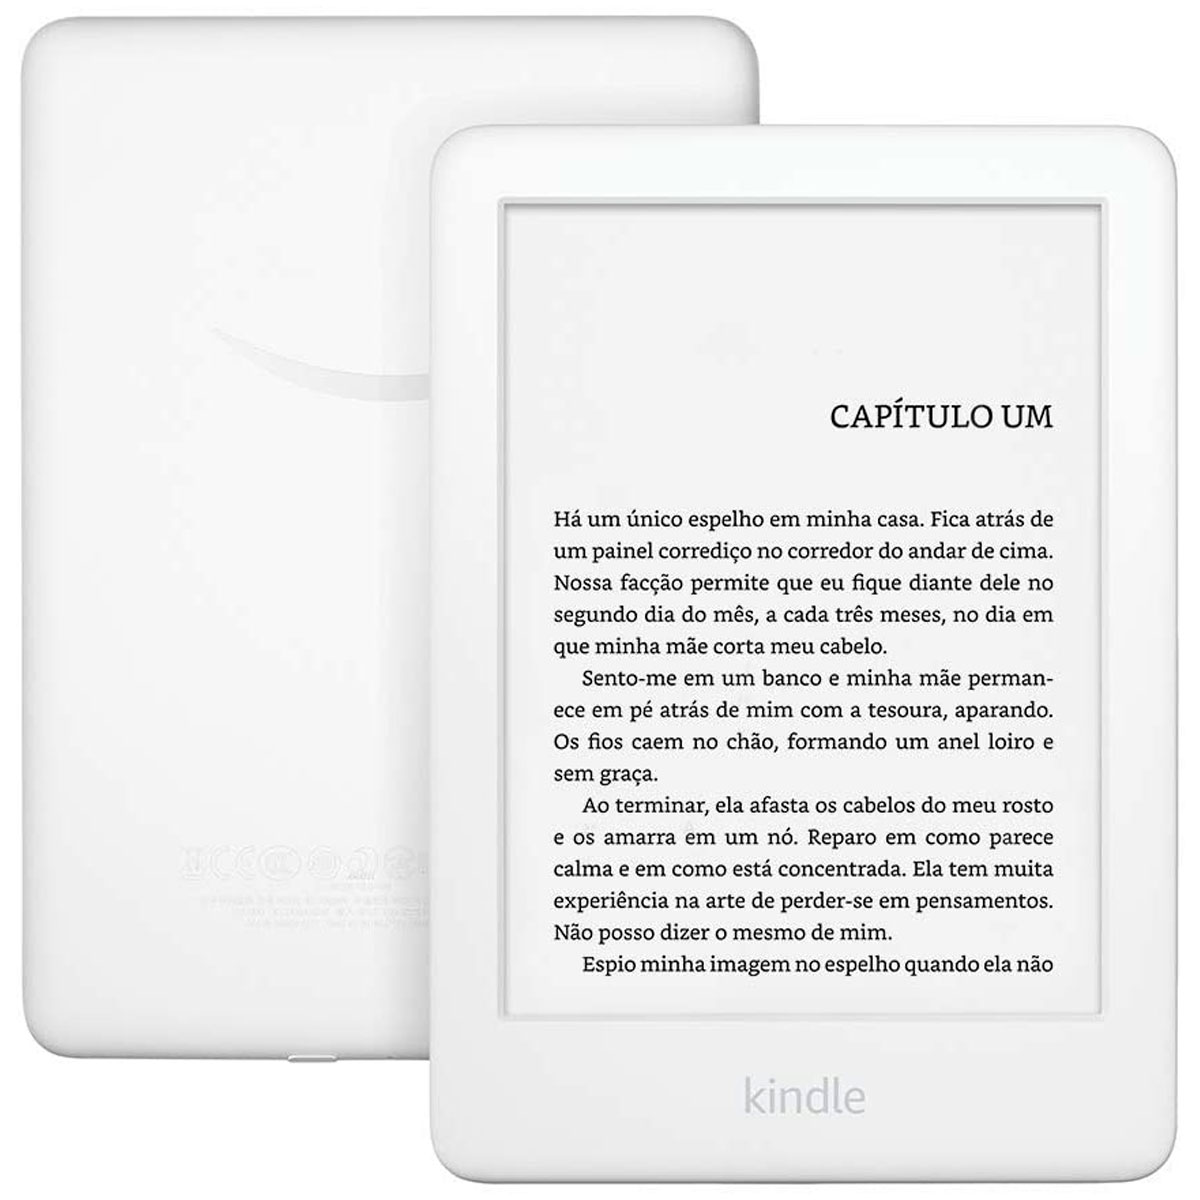 Kindle 10ª Geração - 8GB - Wi-Fi - Luz de Leitura Integrada - Tela Antirreflexo - Branco - B07FPX33X5